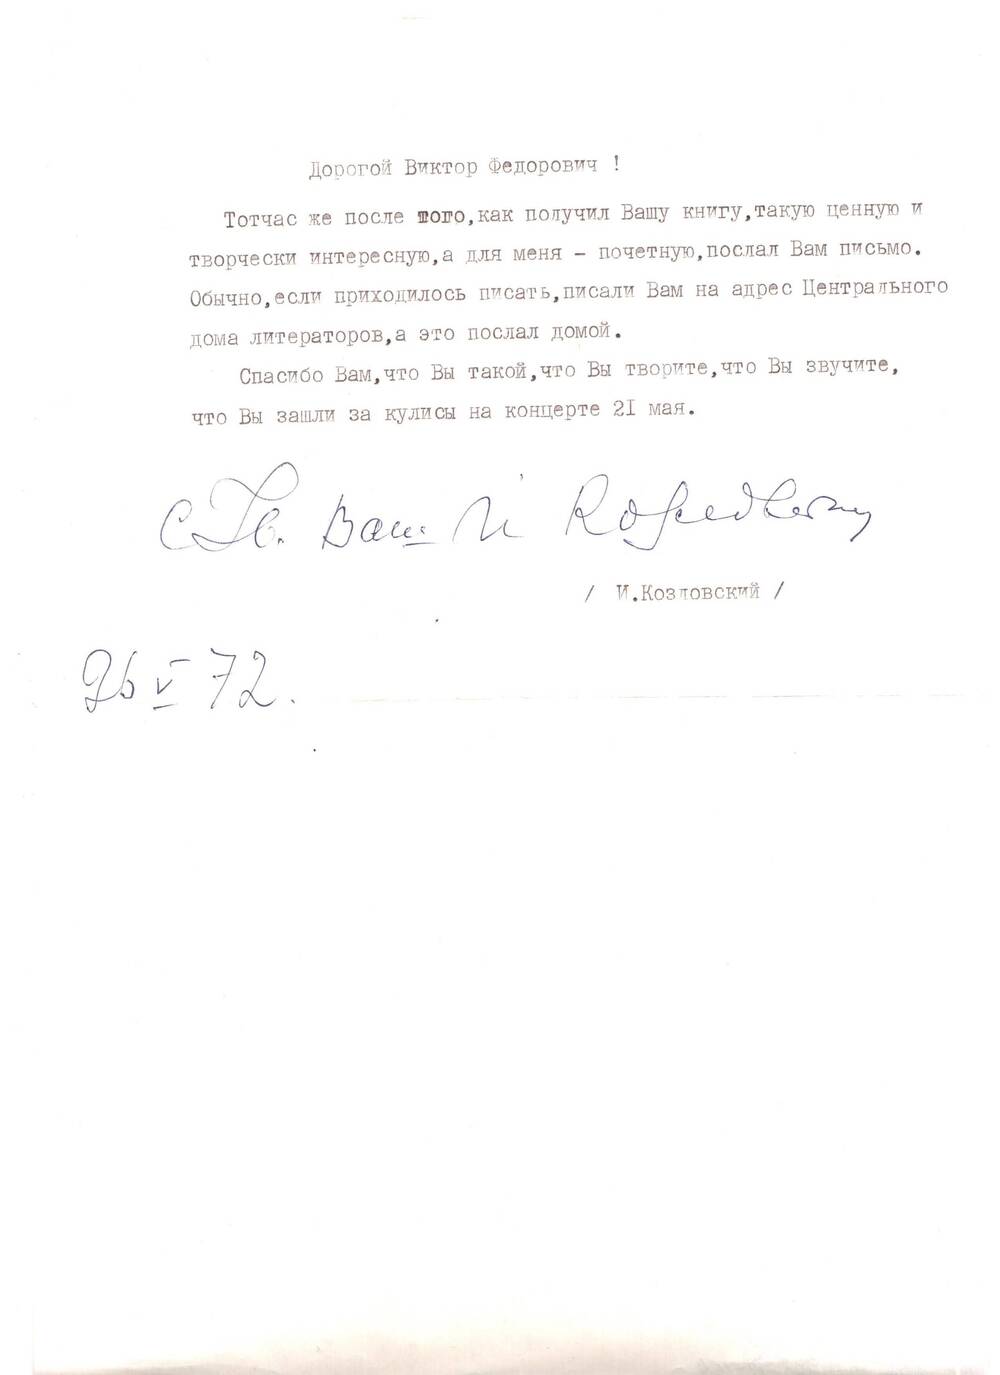 Письмо от И. Козловского.